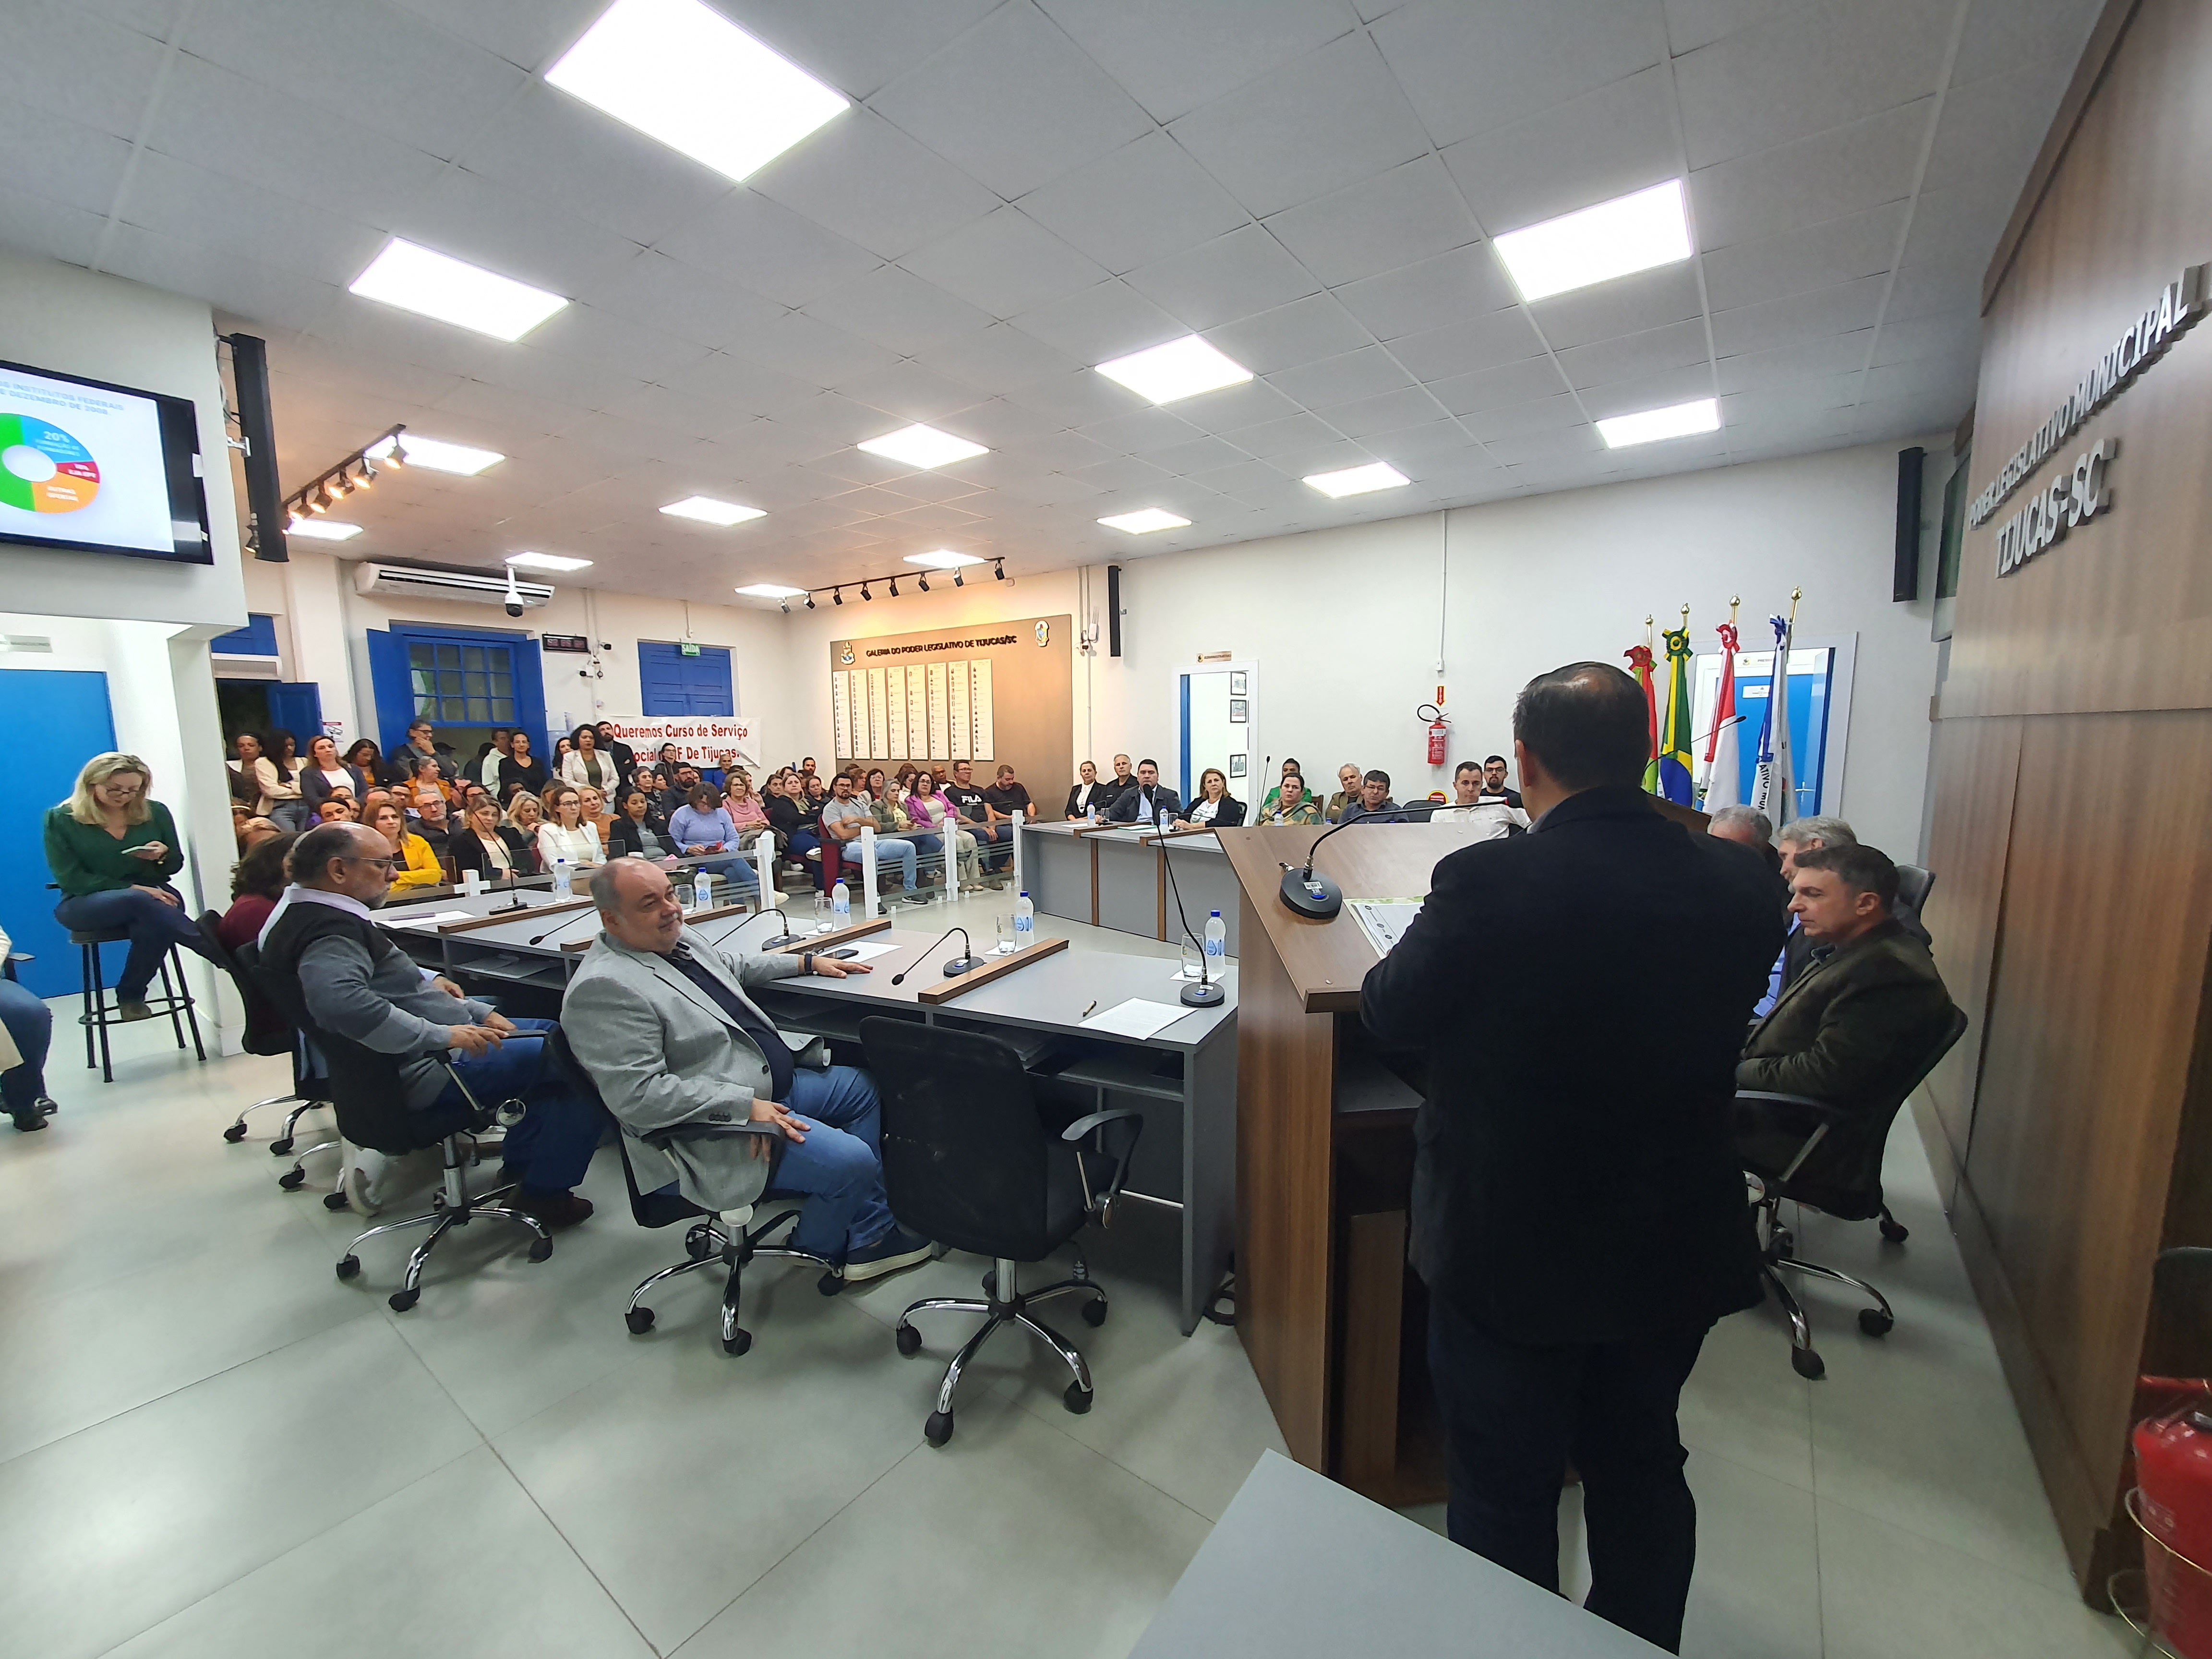 Audiência pública na Câmara de Vereadores de Tijucas reuniu representantes da comunidade para discutir cursos a serem ofertados no novo câmpus